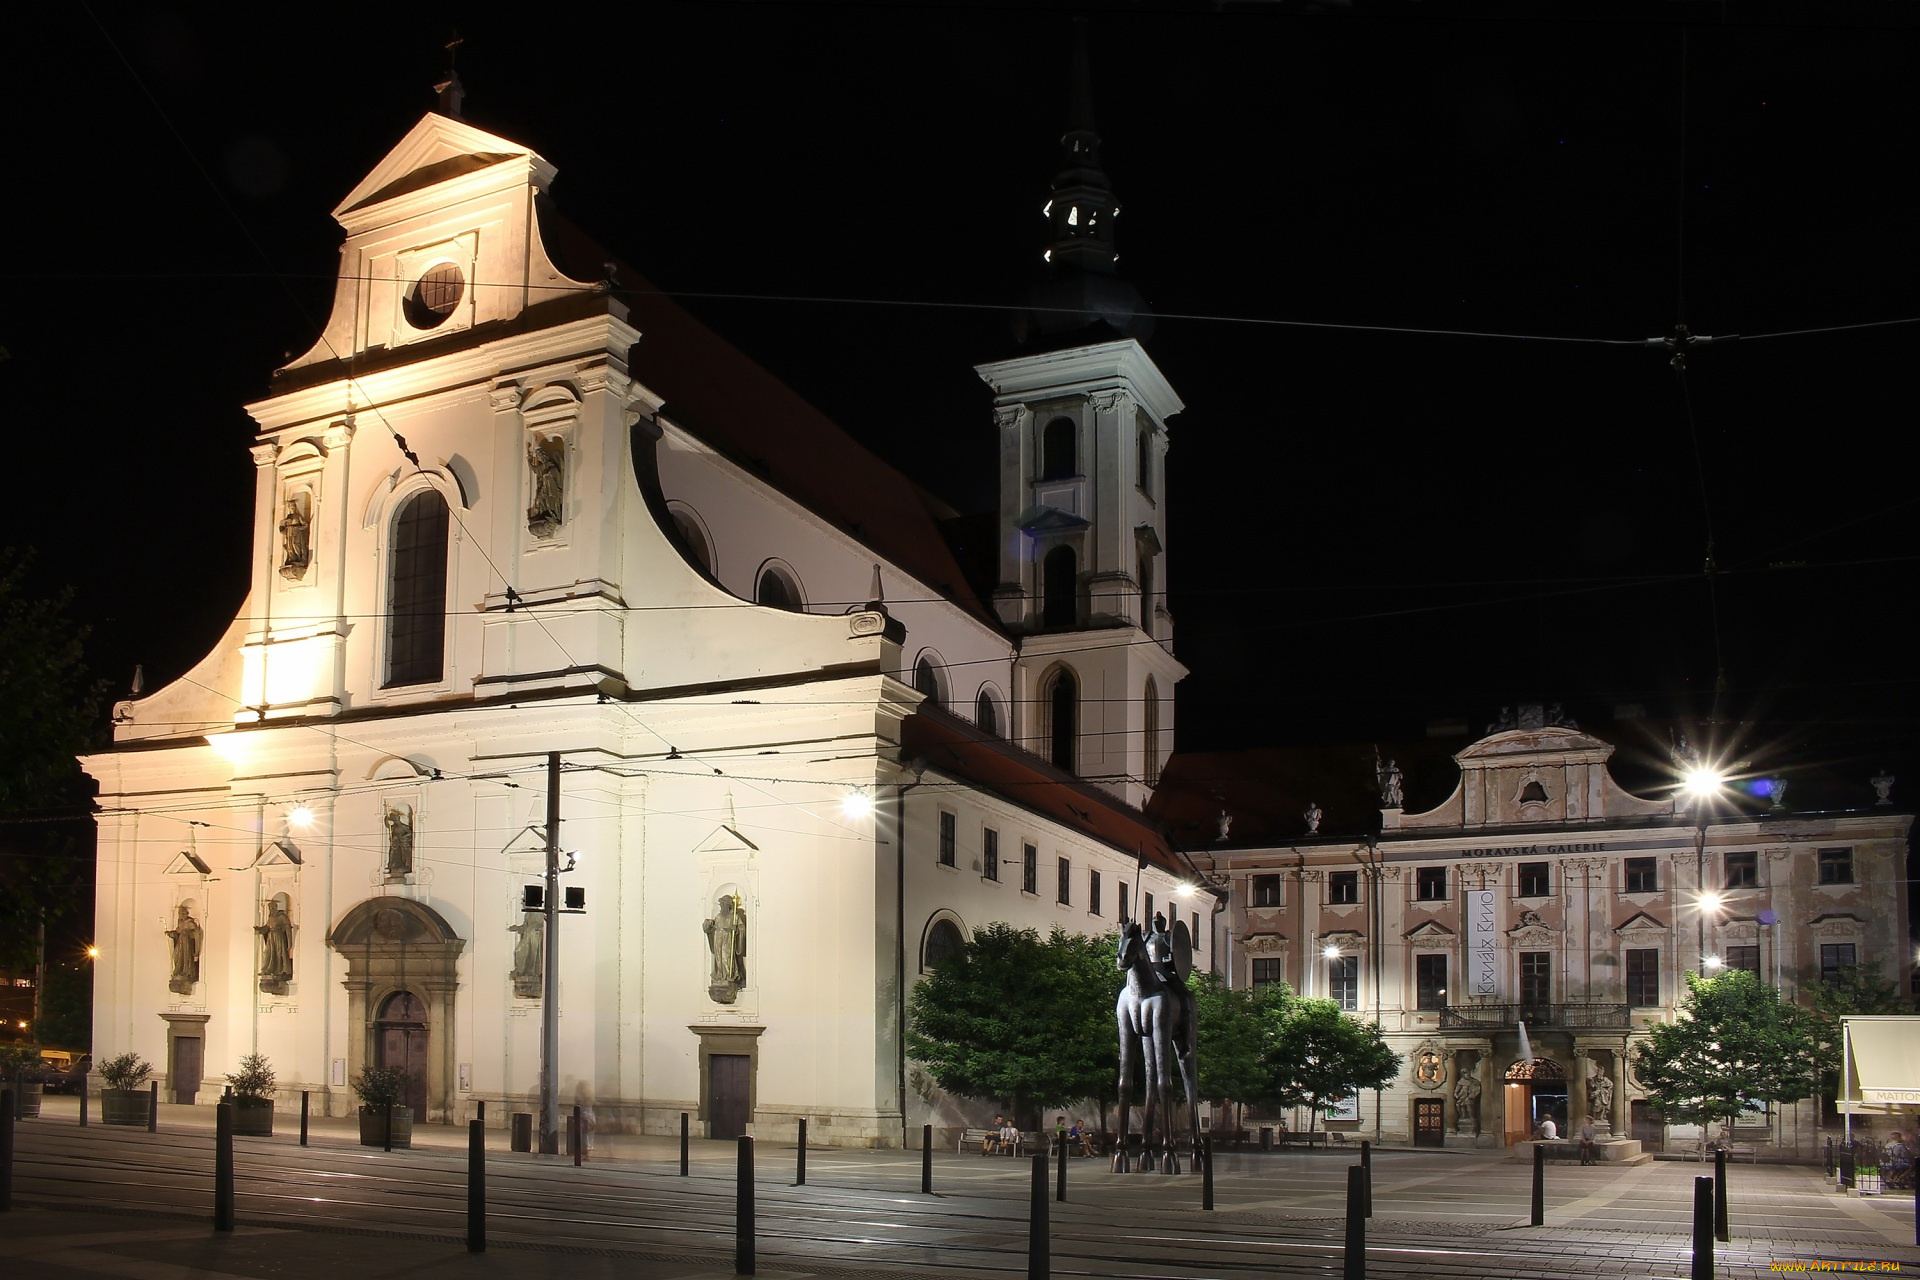 Чехия, города, -, улицы, , площади, , набережные, здания, дорога, фонари, ночь, скульптура